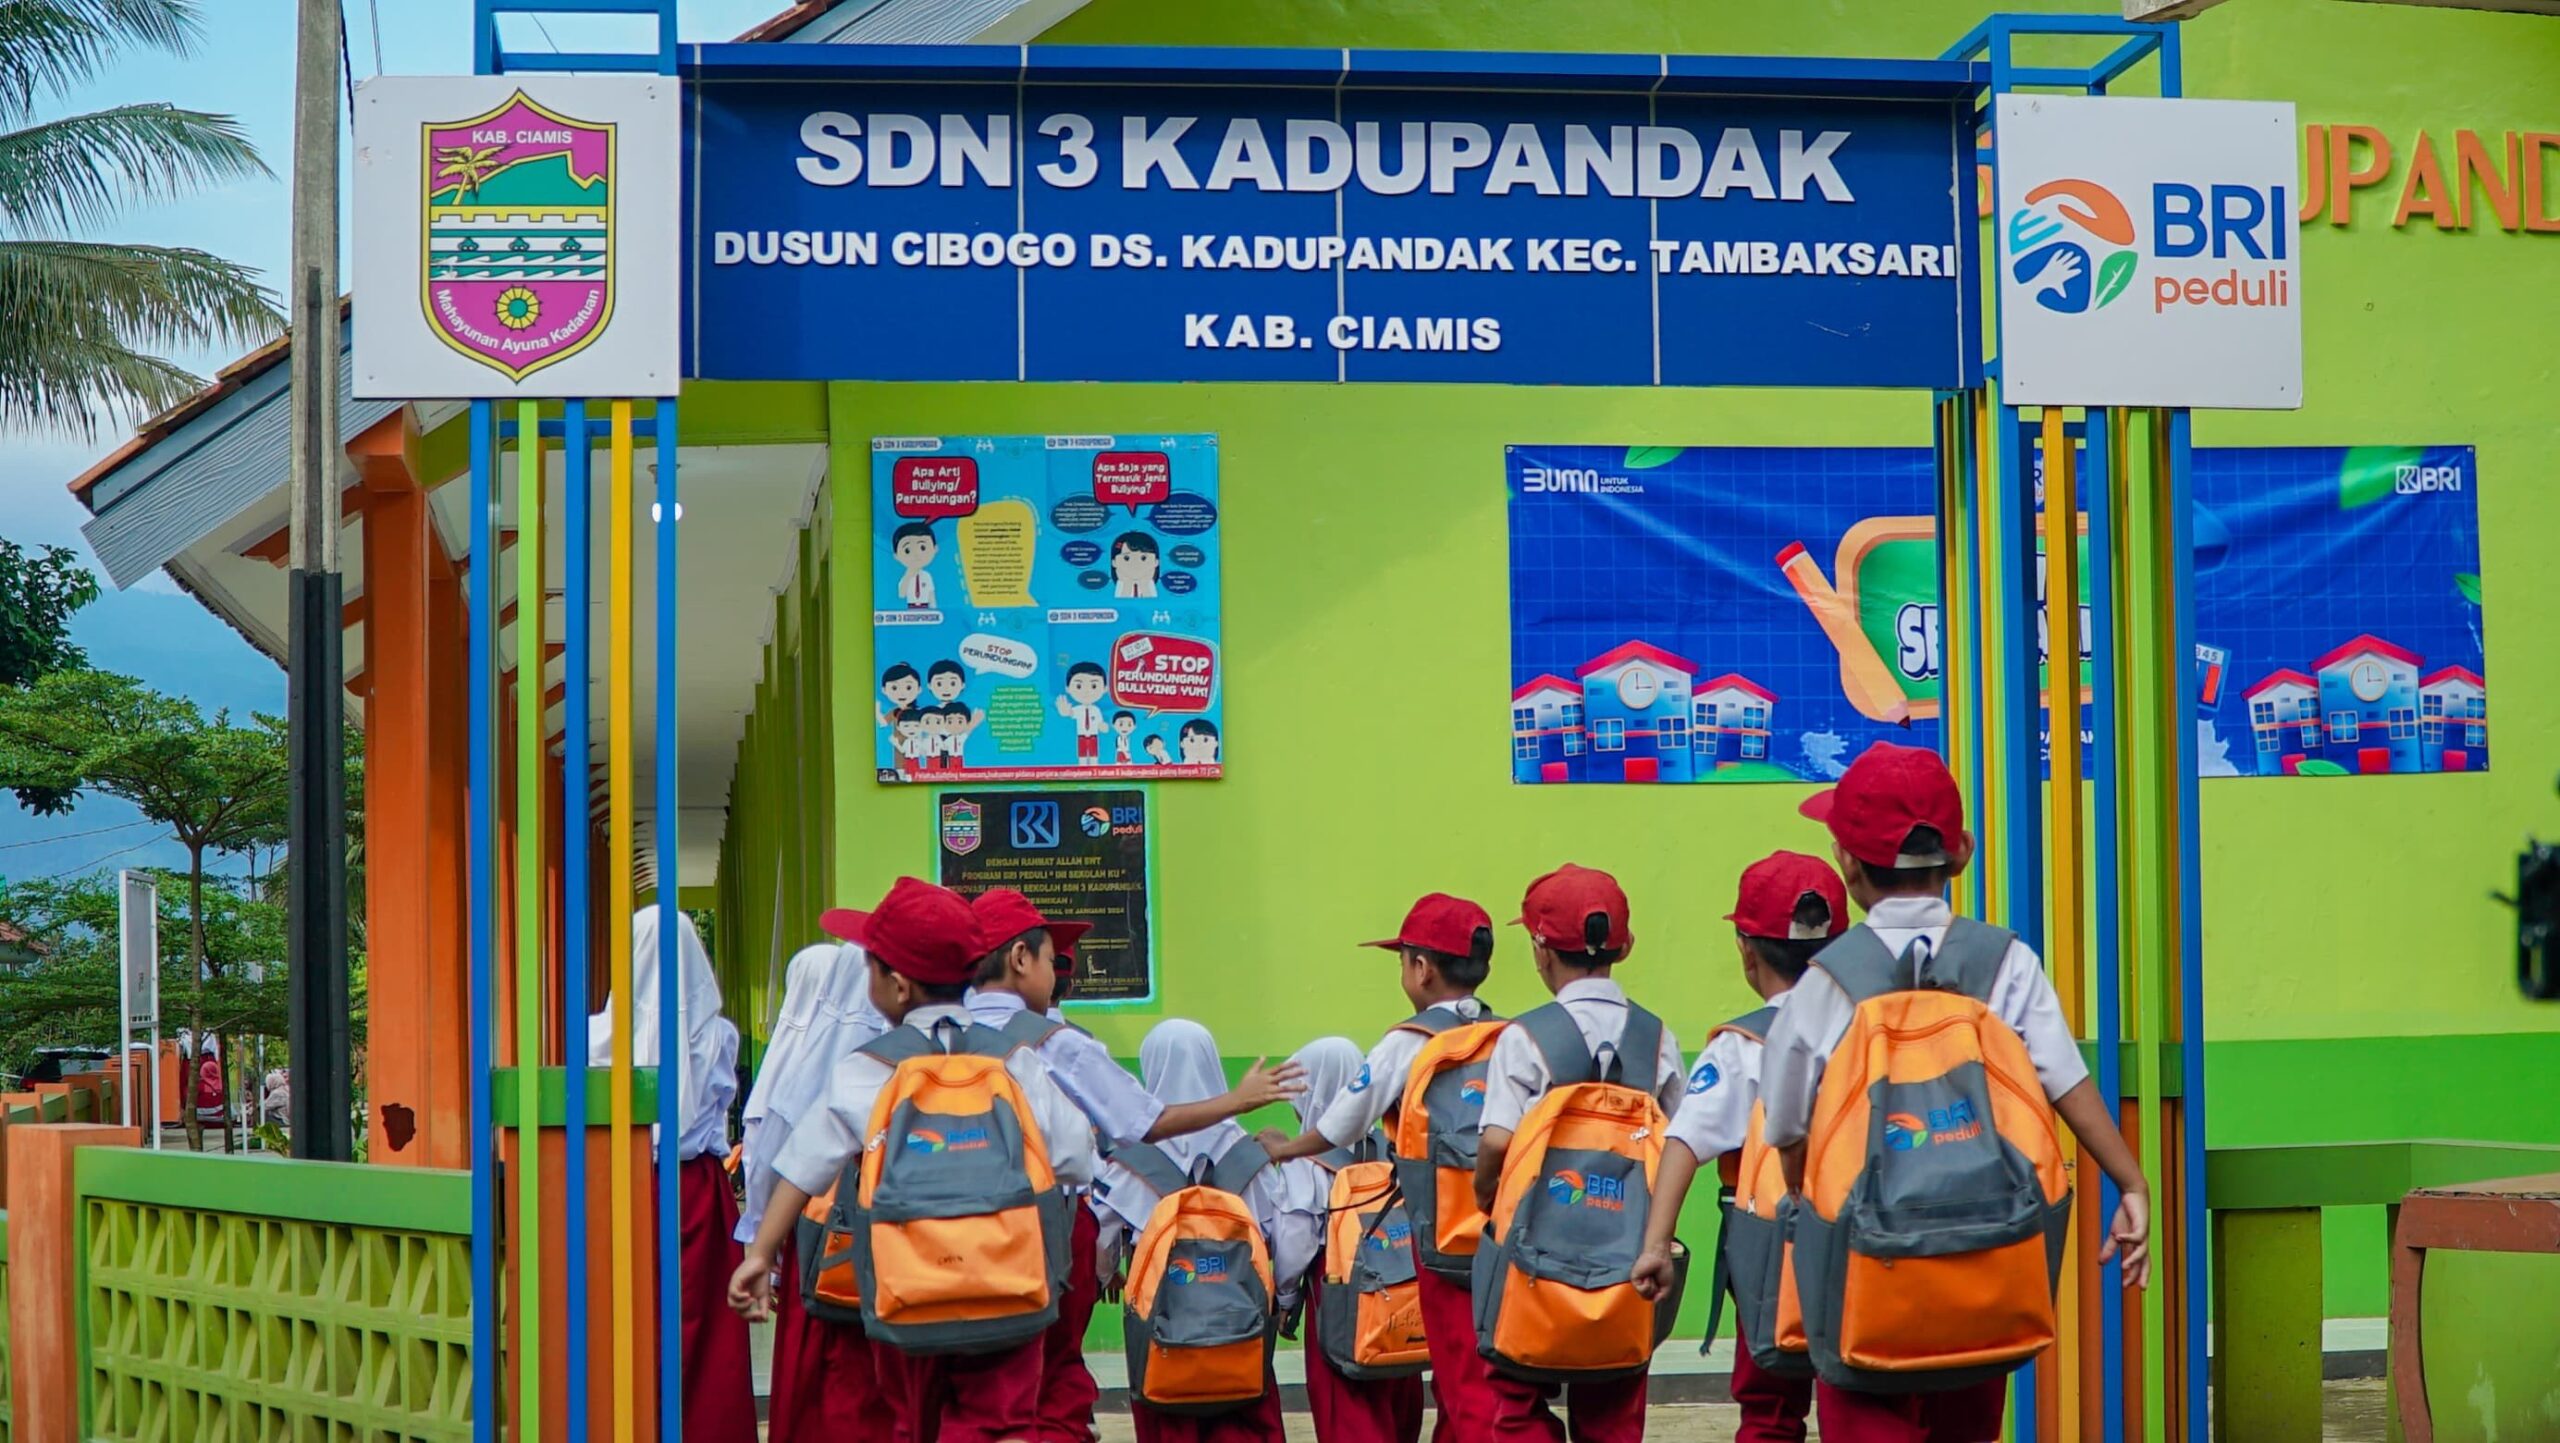 BRI Peduli Ini Sekolahku jadi Wujud Nyata Komitmen Memajukan Pendidikan Indonesia